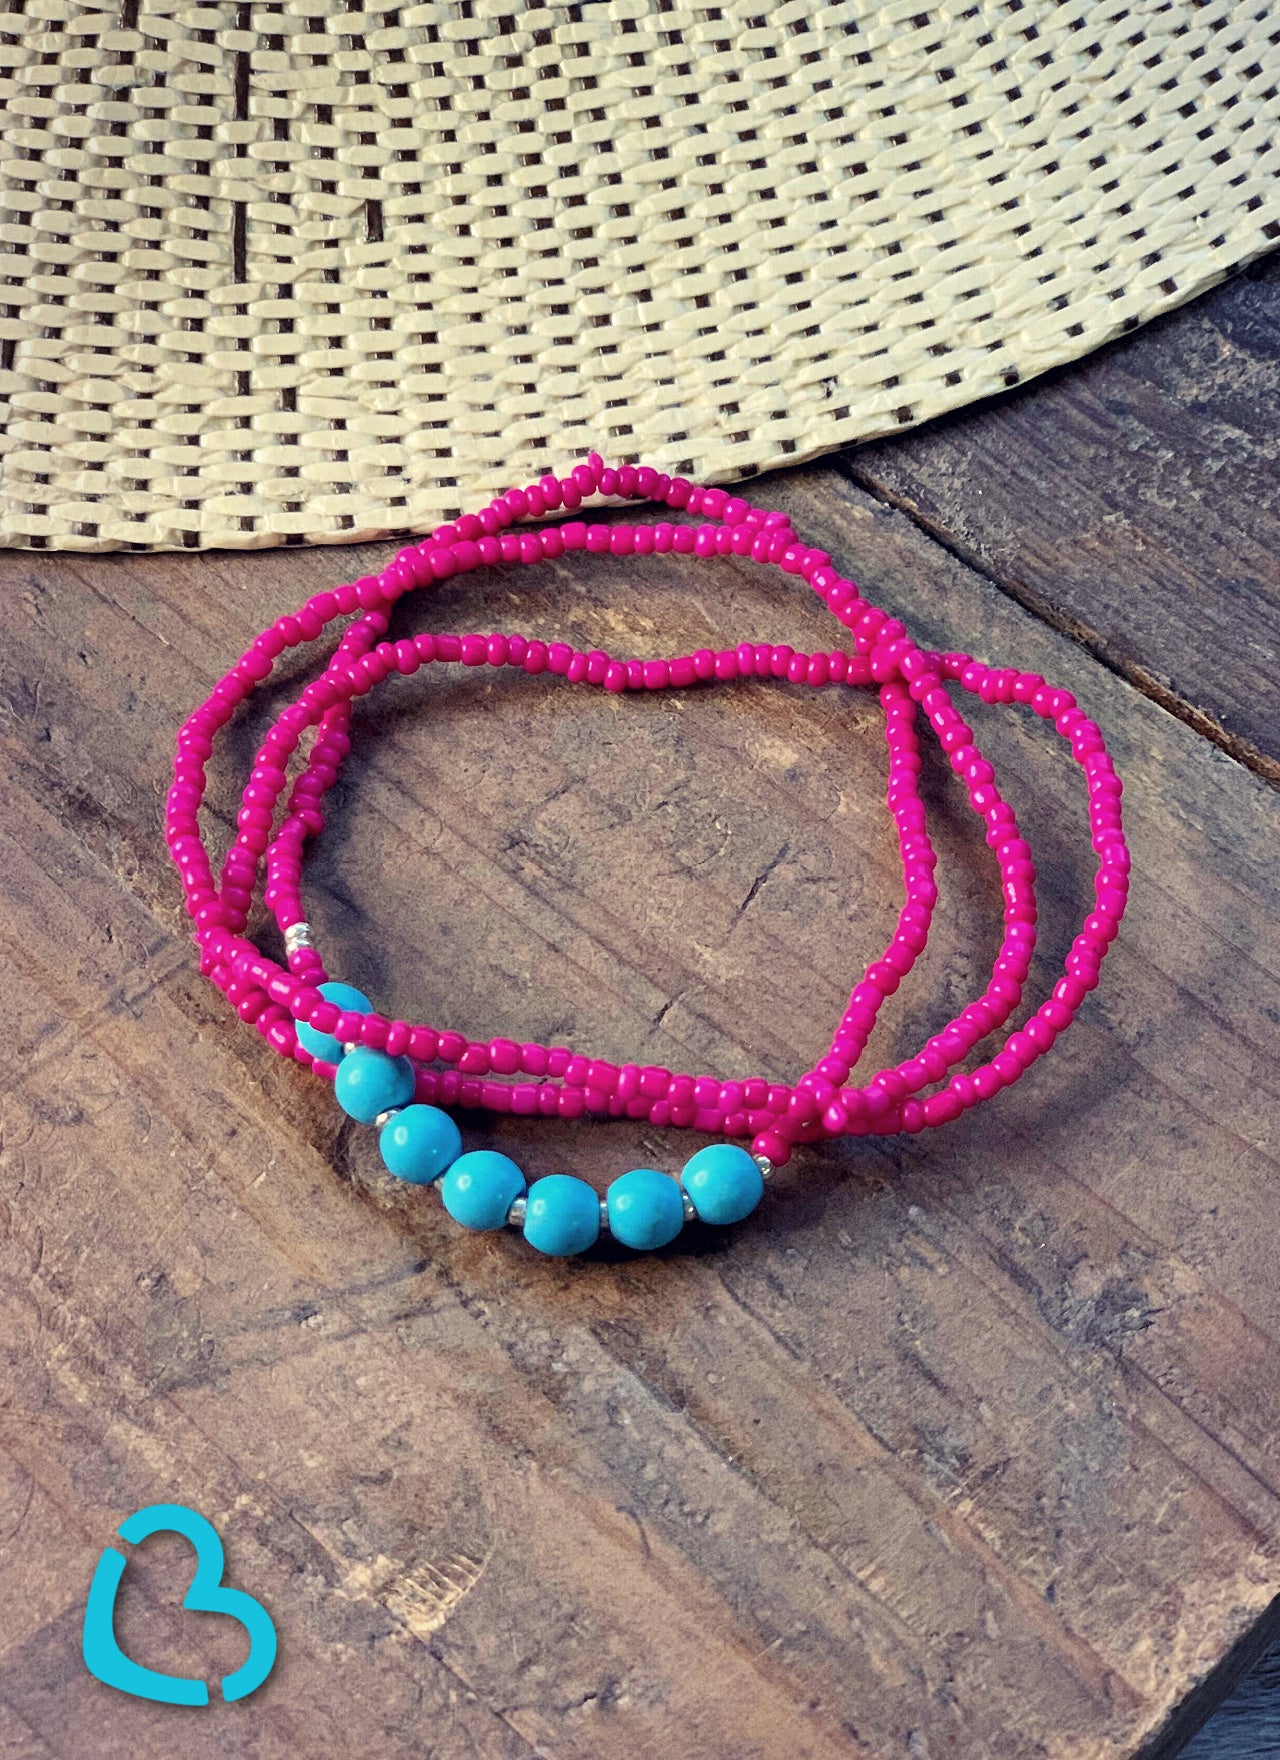 The Hippie Stretch Bracelet Set in Pink Jewelry 176 